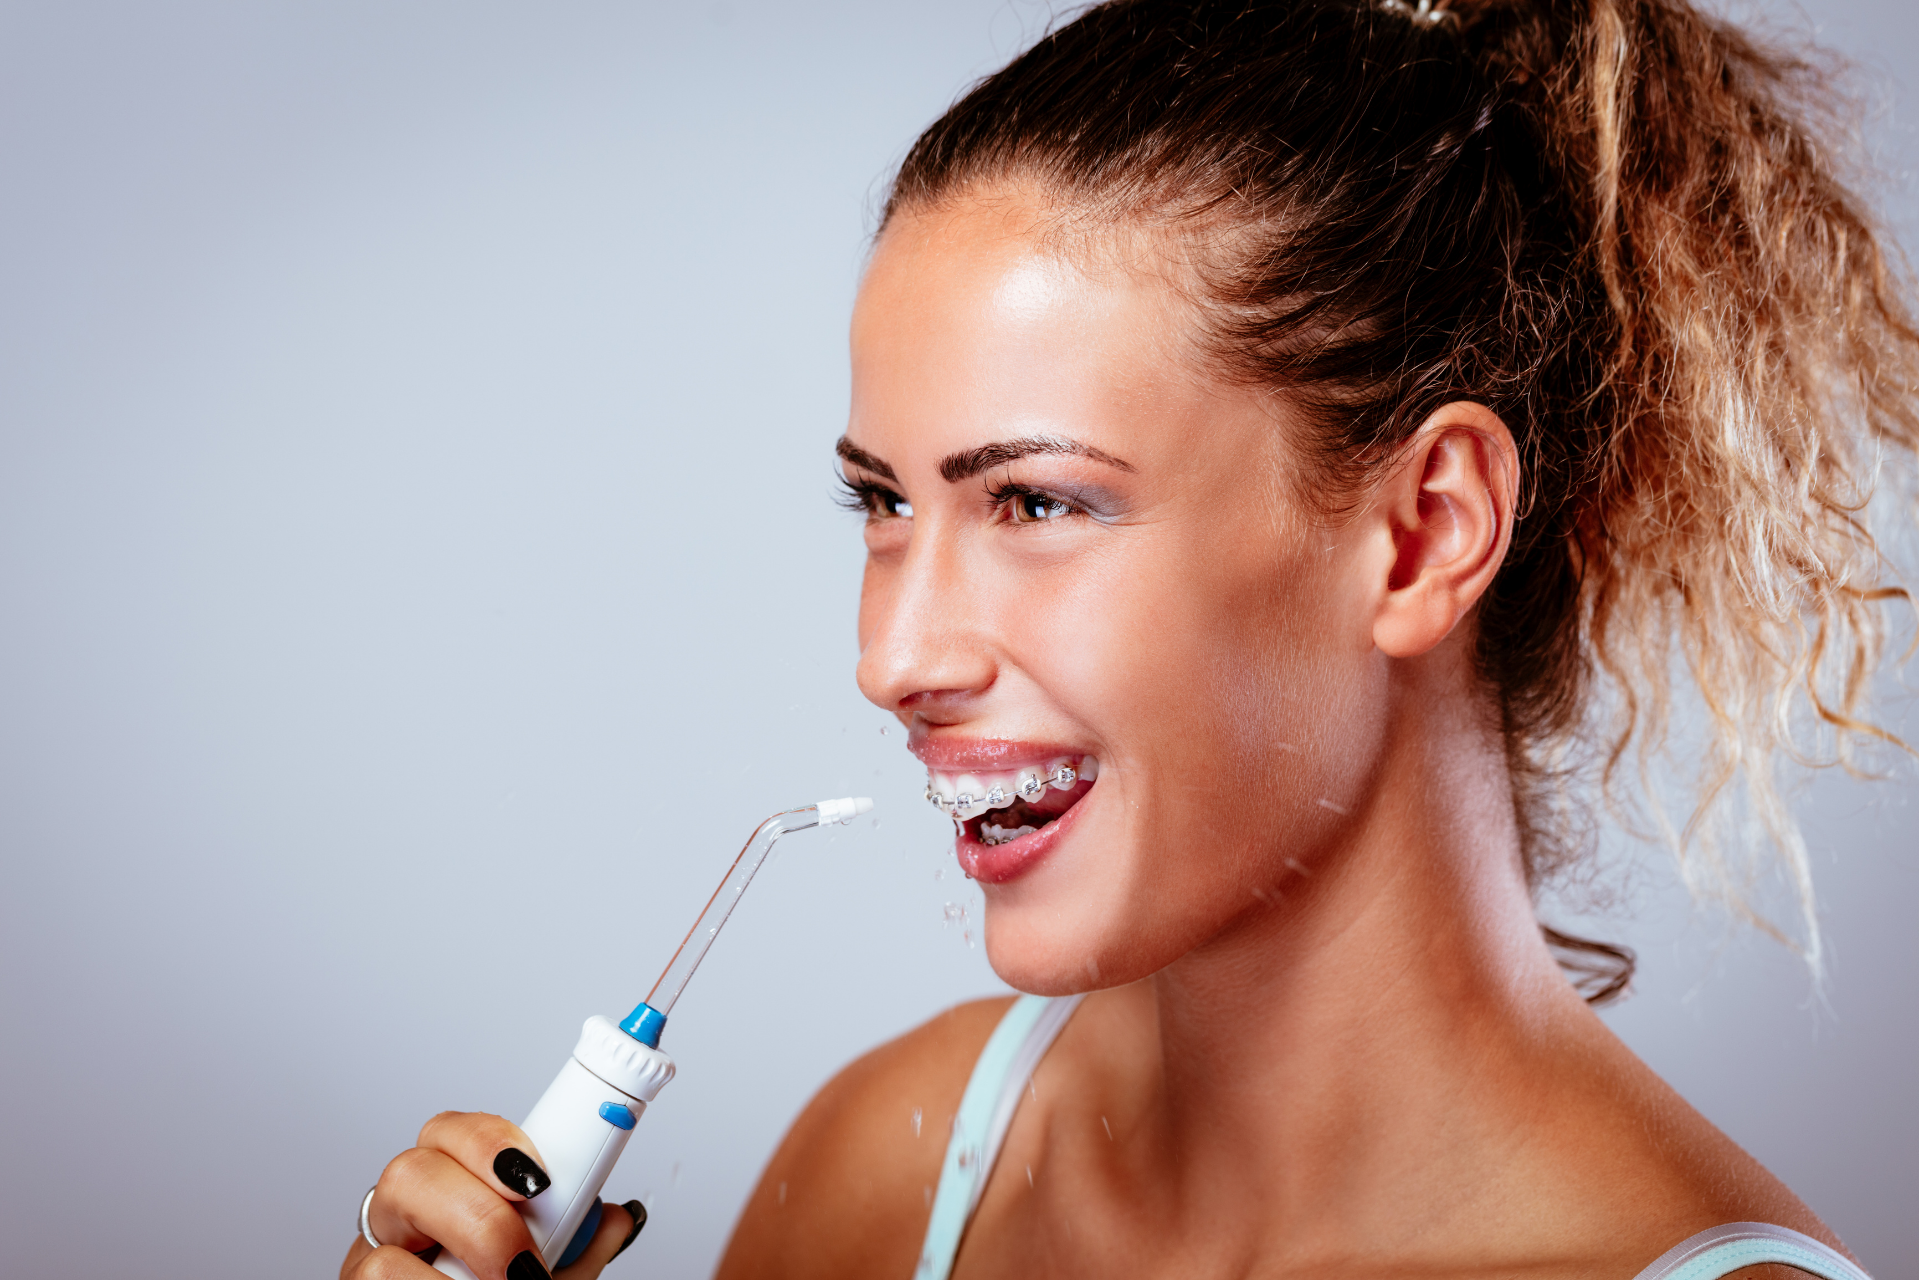 WaterPik vs. Dental Floss: What’s Better For You